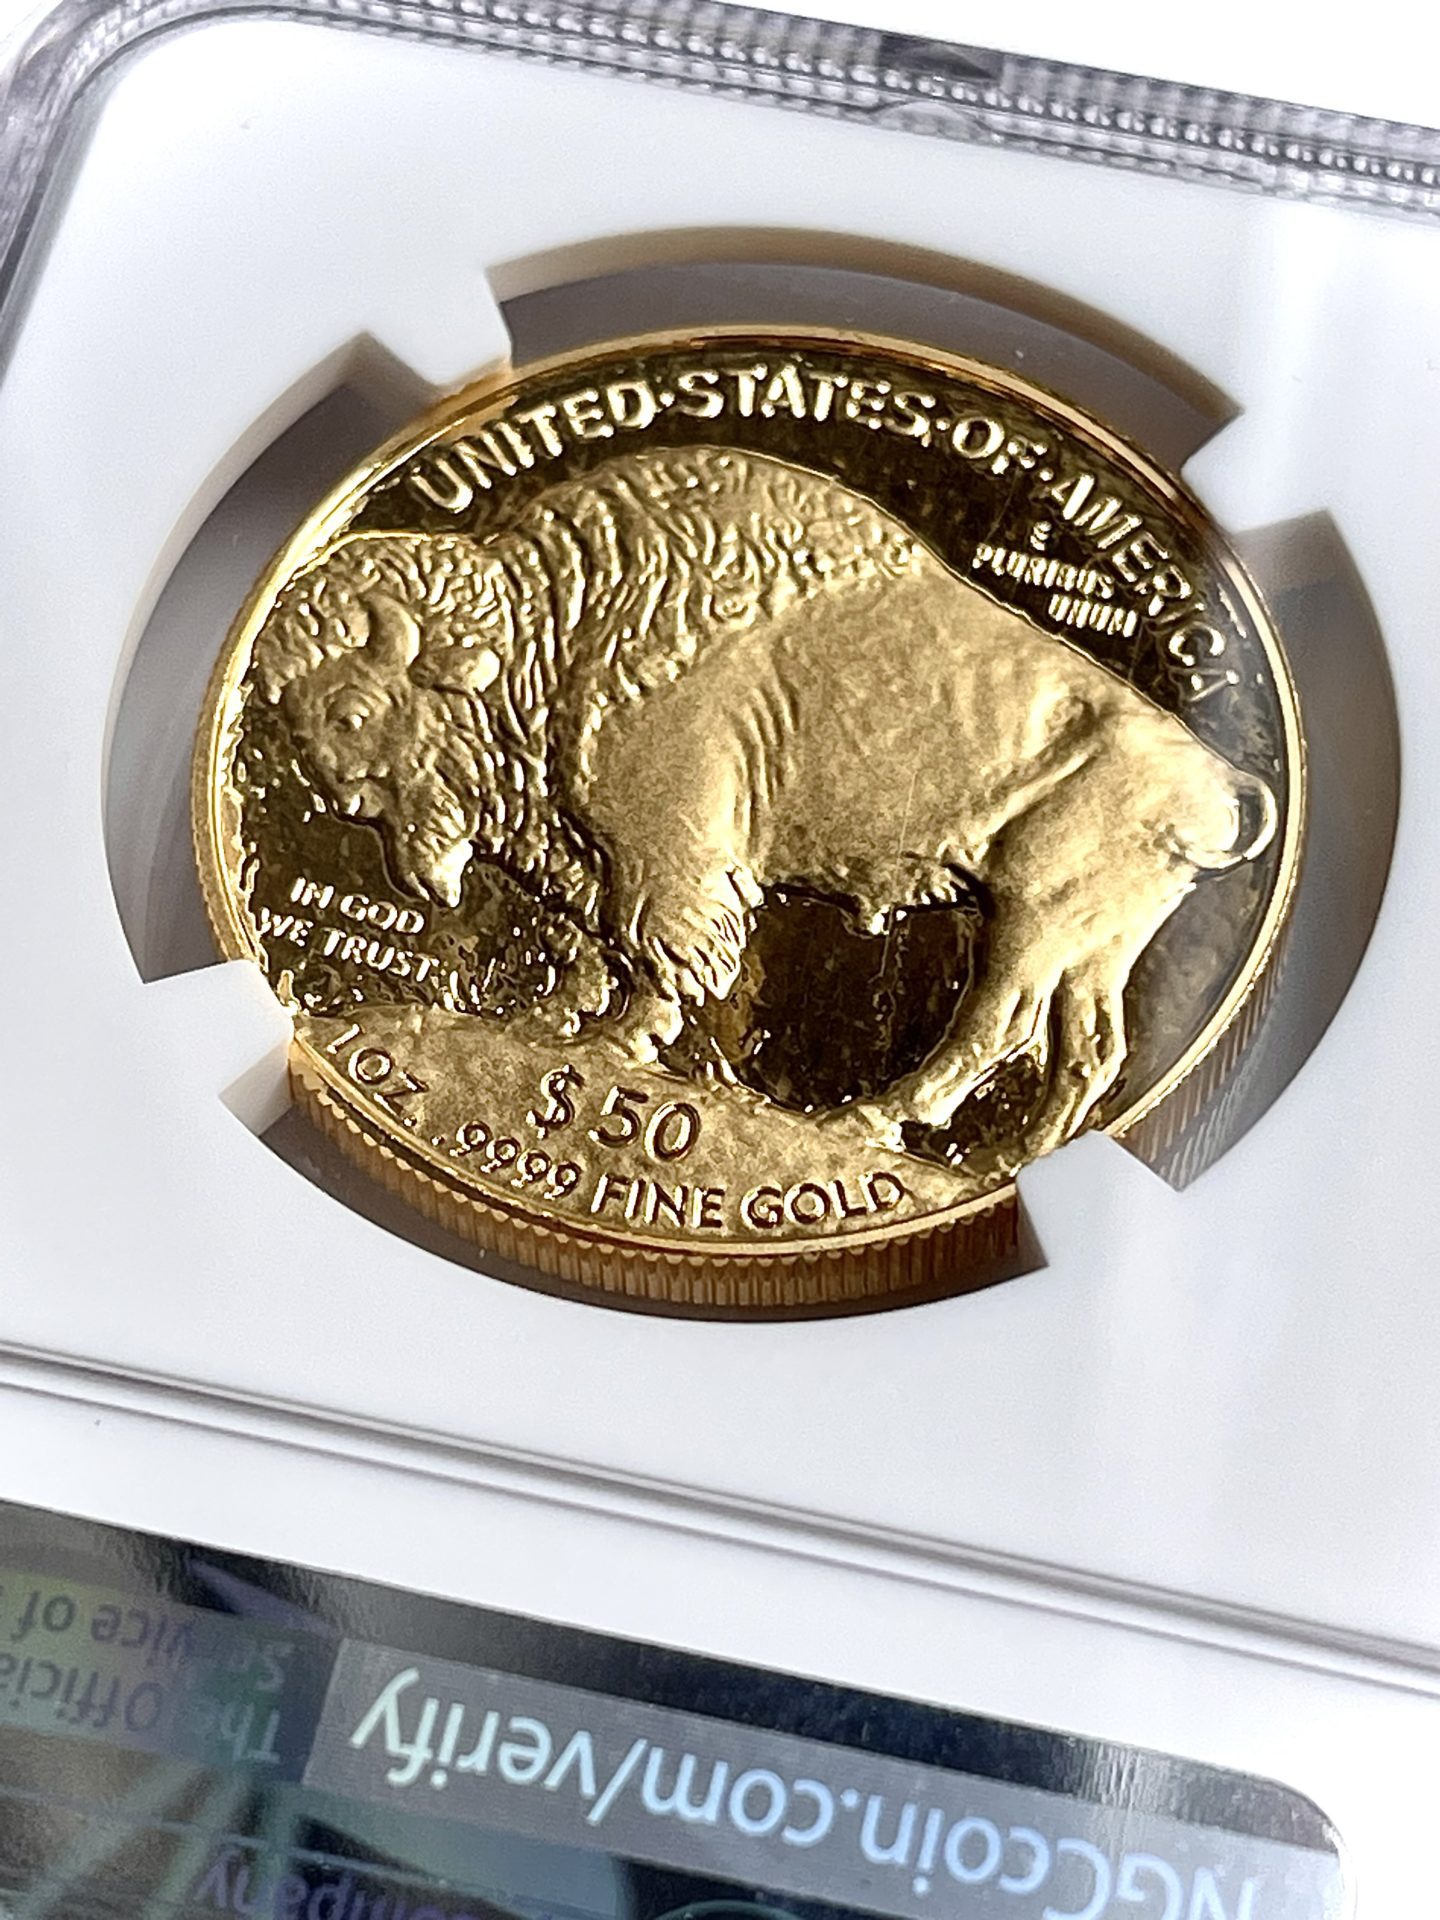 USA American buffalo gold 2006 proof 1oz NGC pf70 ultra-cameo